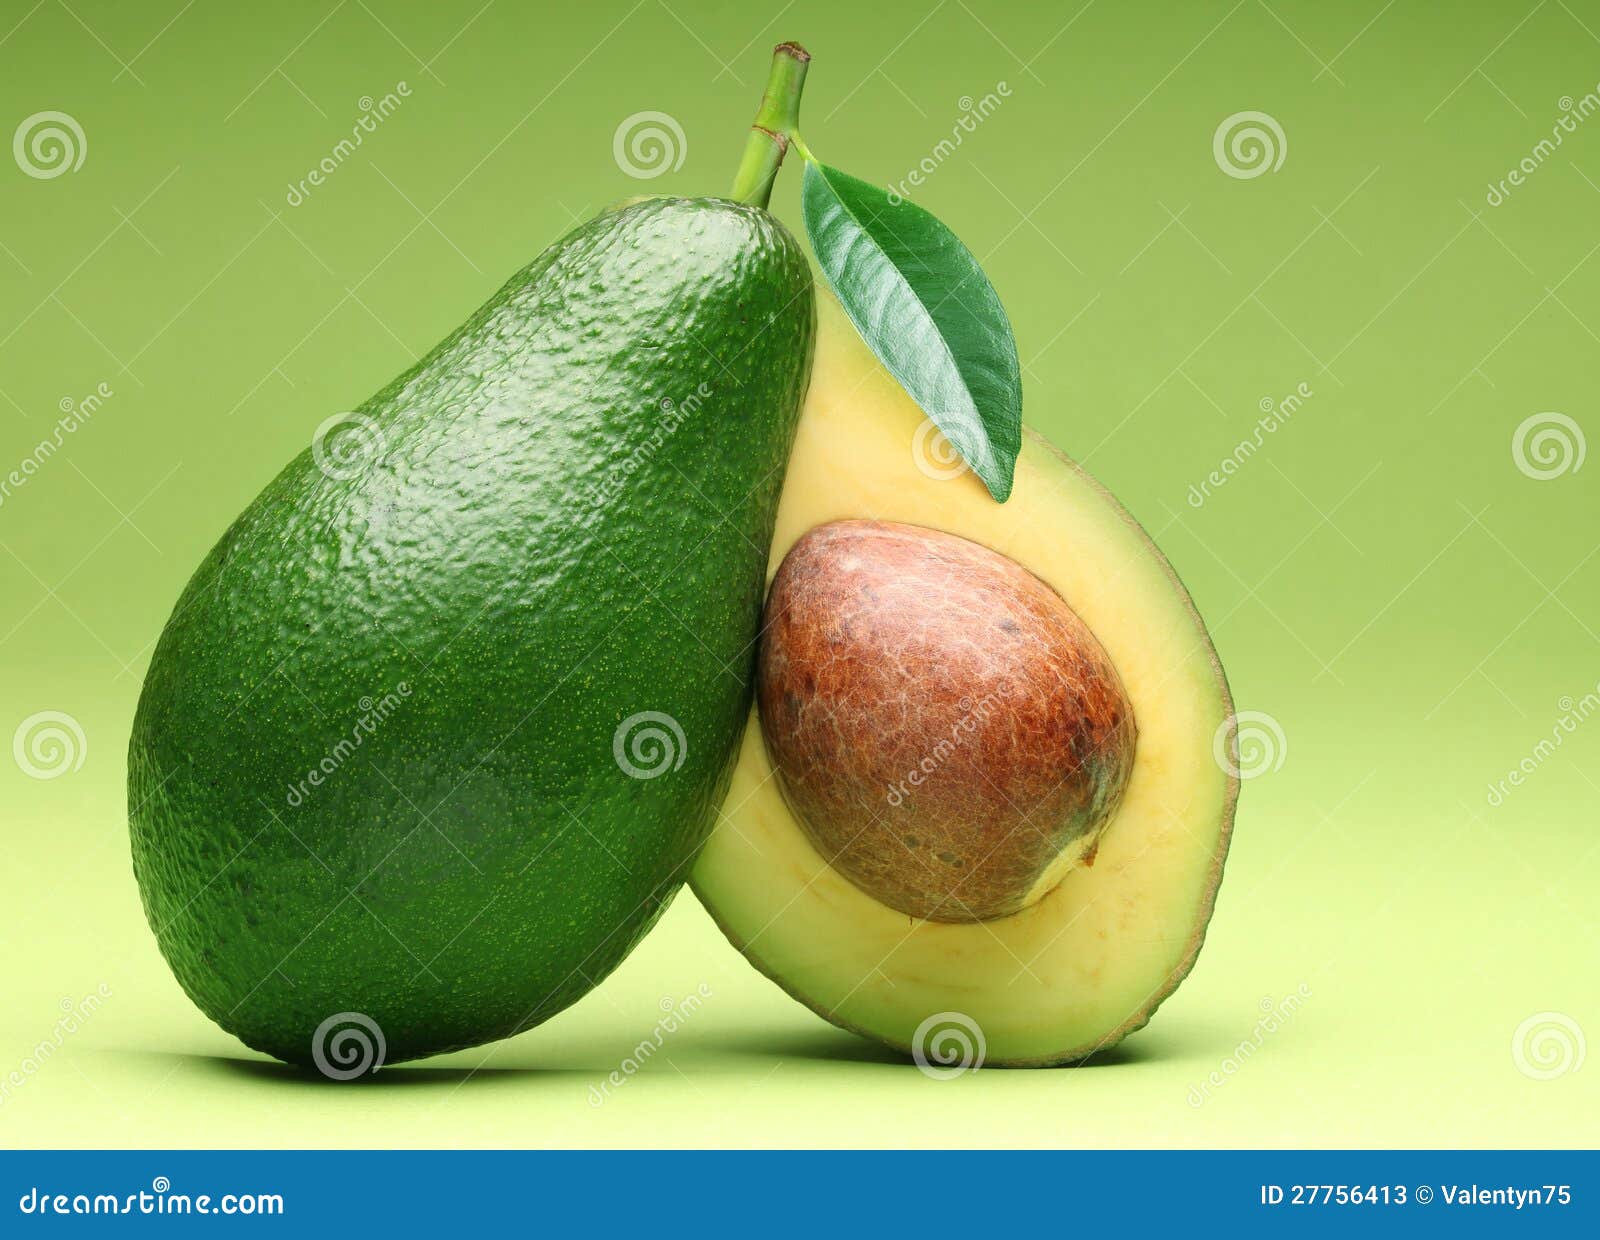 avocado  on a green.